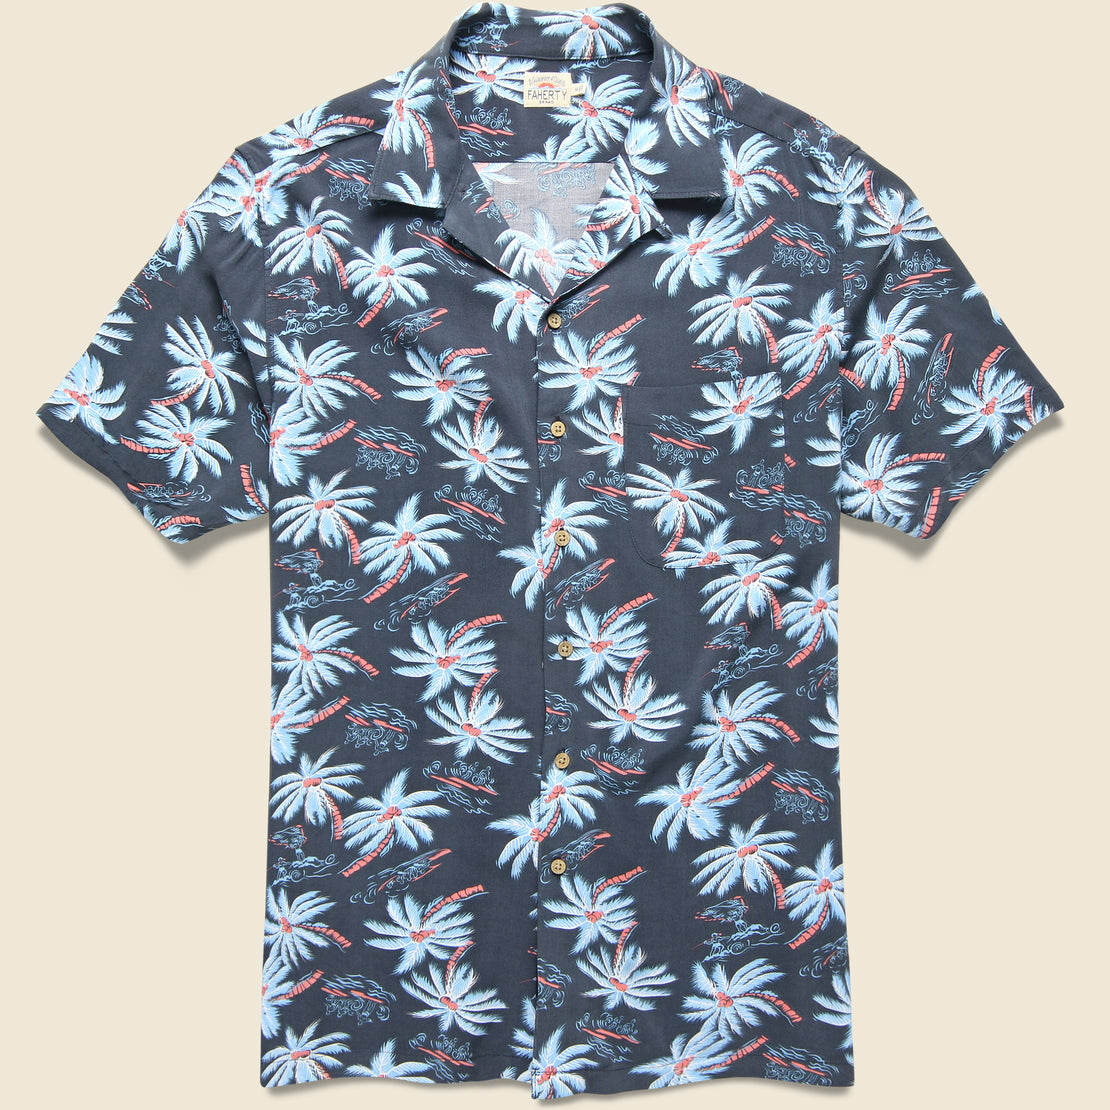 Faherty Kona Camp Shirt - Midnight Palm Hawaiian